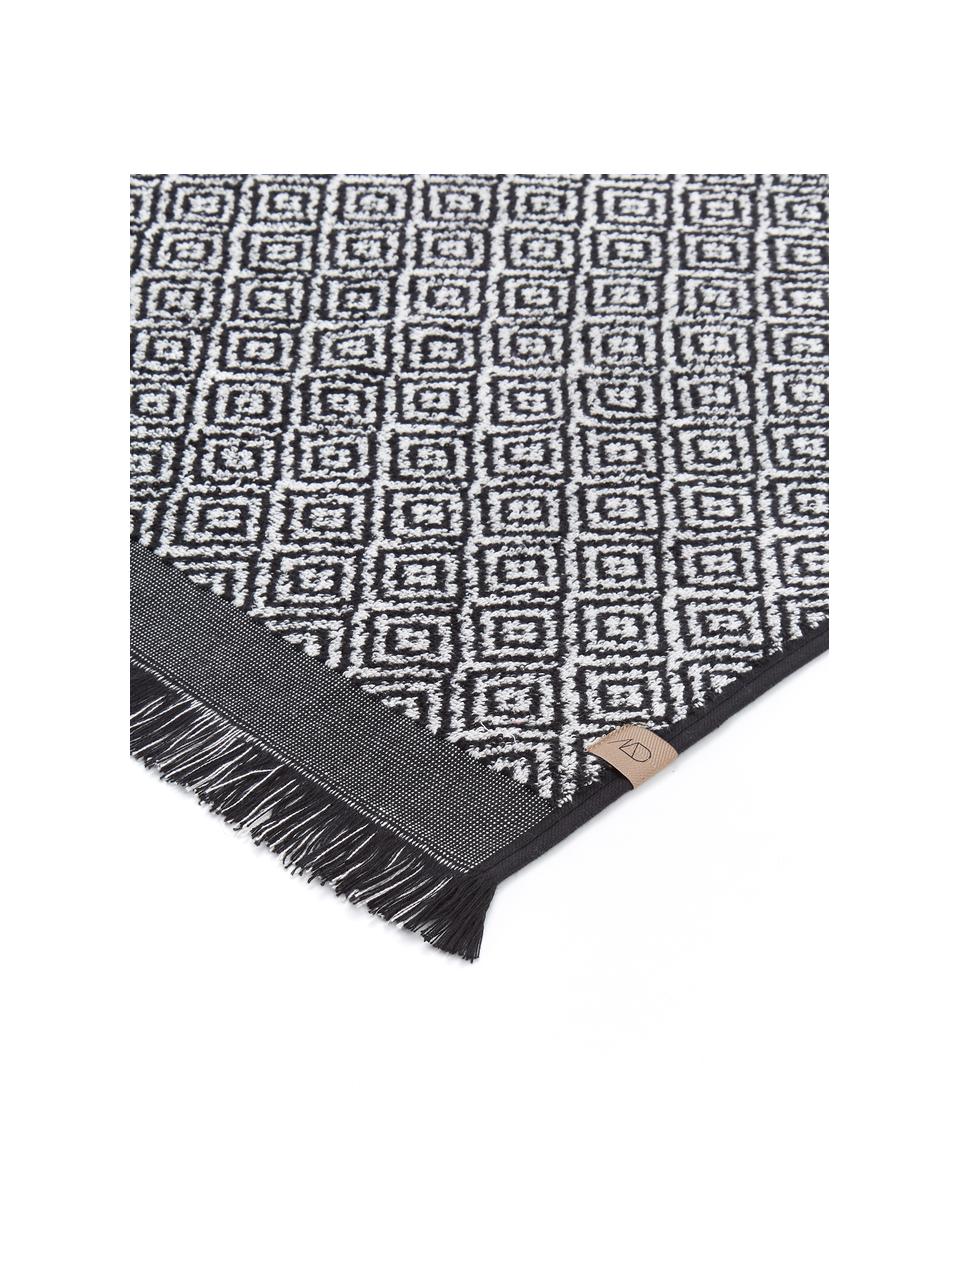 Handtuch Morocco, verschiedene Größen, mit Rautenmuster, Schwarz, Weiß, Duschtuch, B 70 x L 135 cm